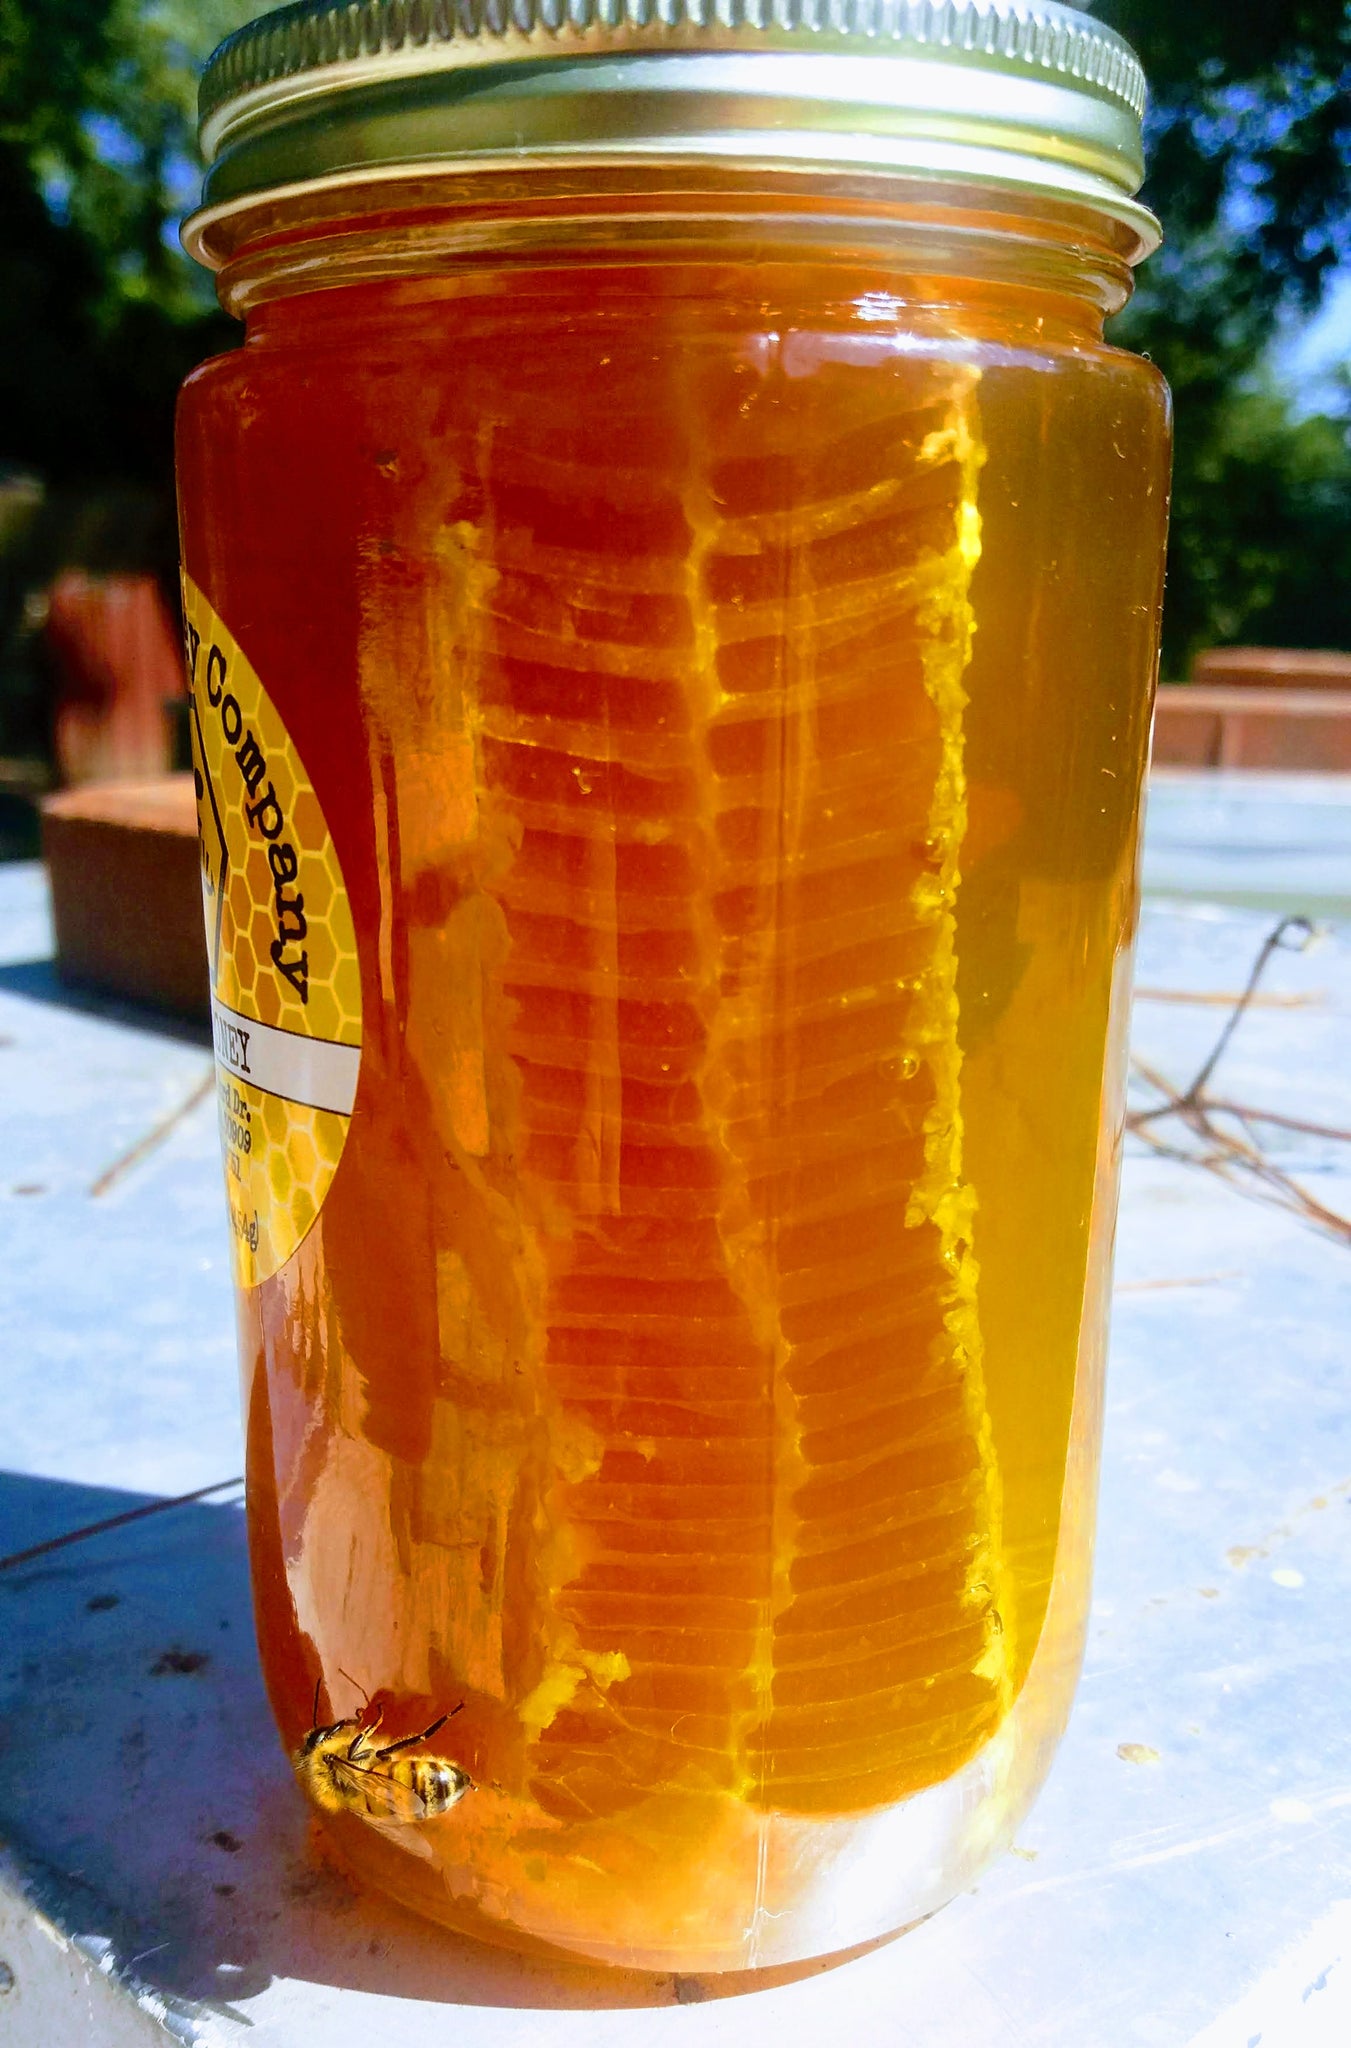 Chunk Honey Comb Augusta Honey Company 